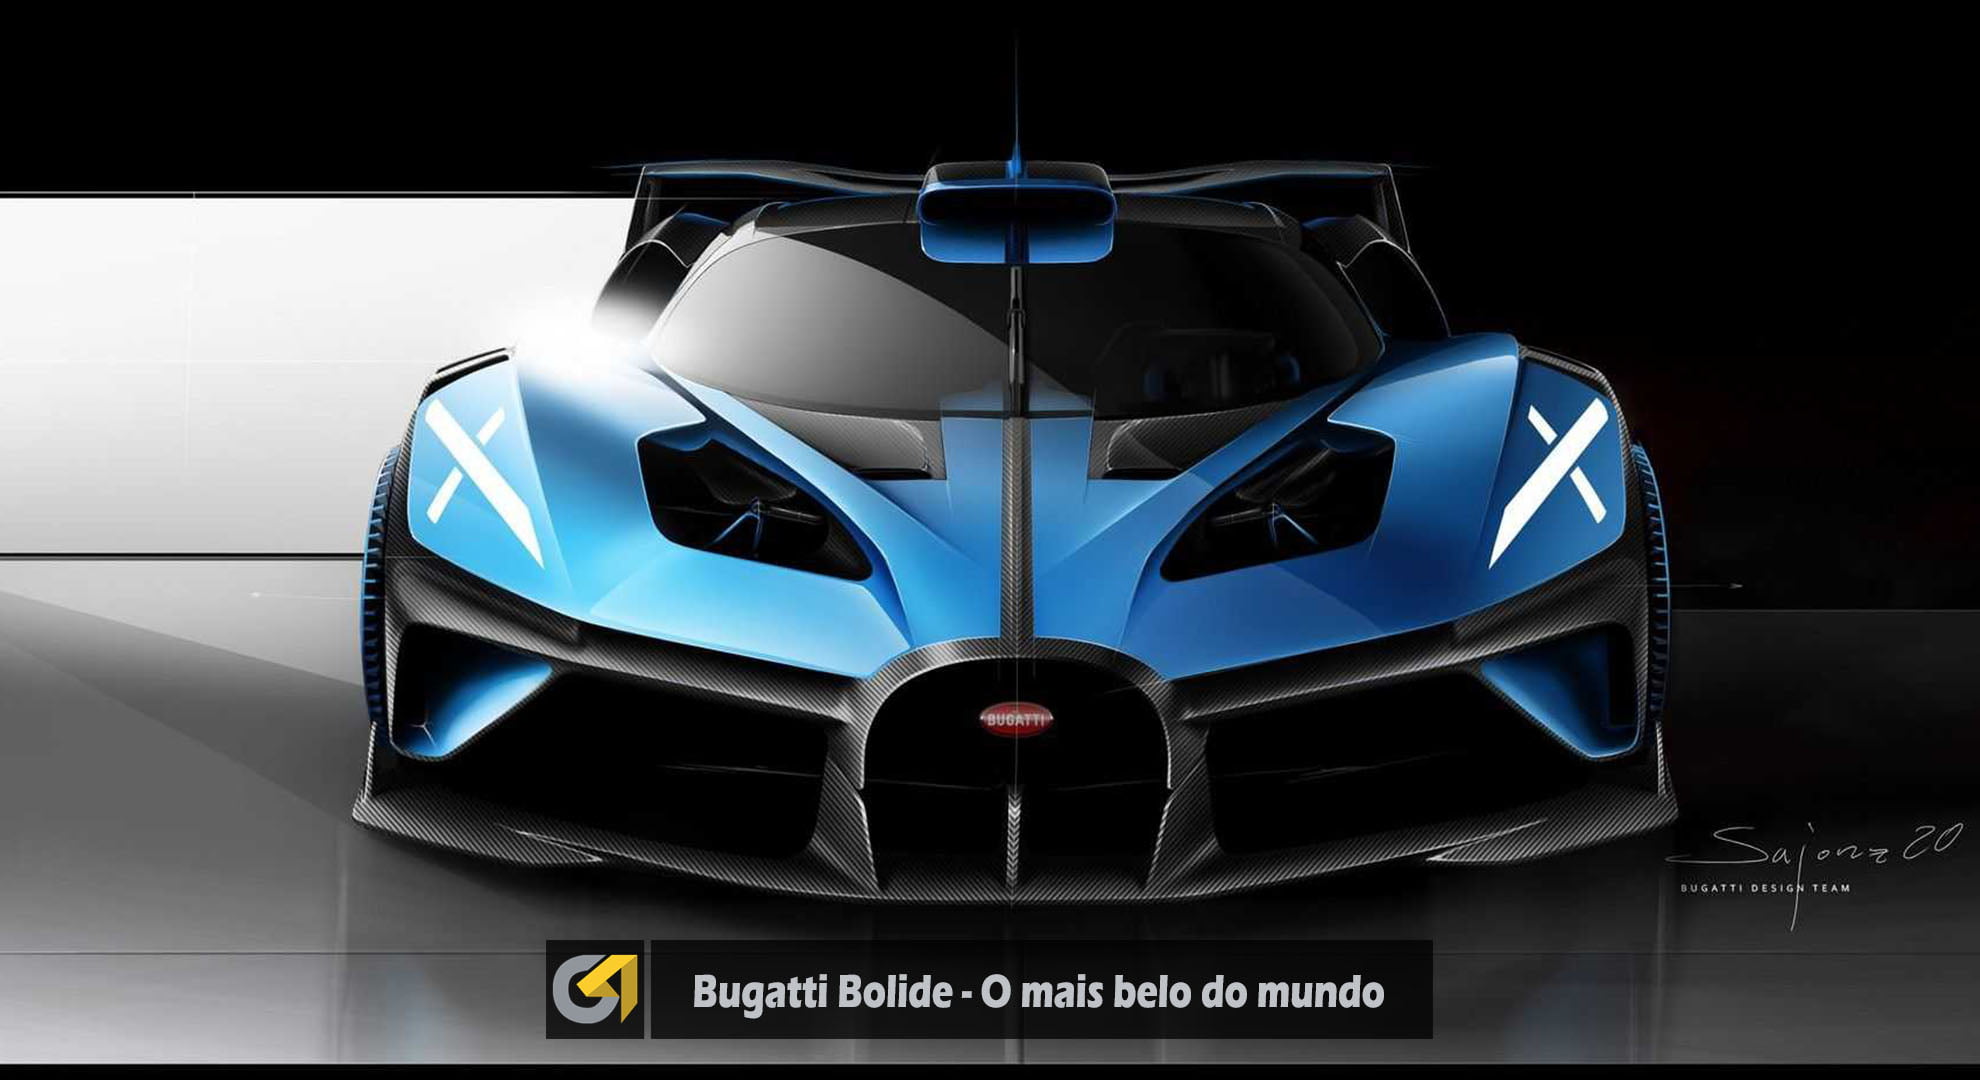 Bugatti Bolide - Eleito o mais belo do mundo